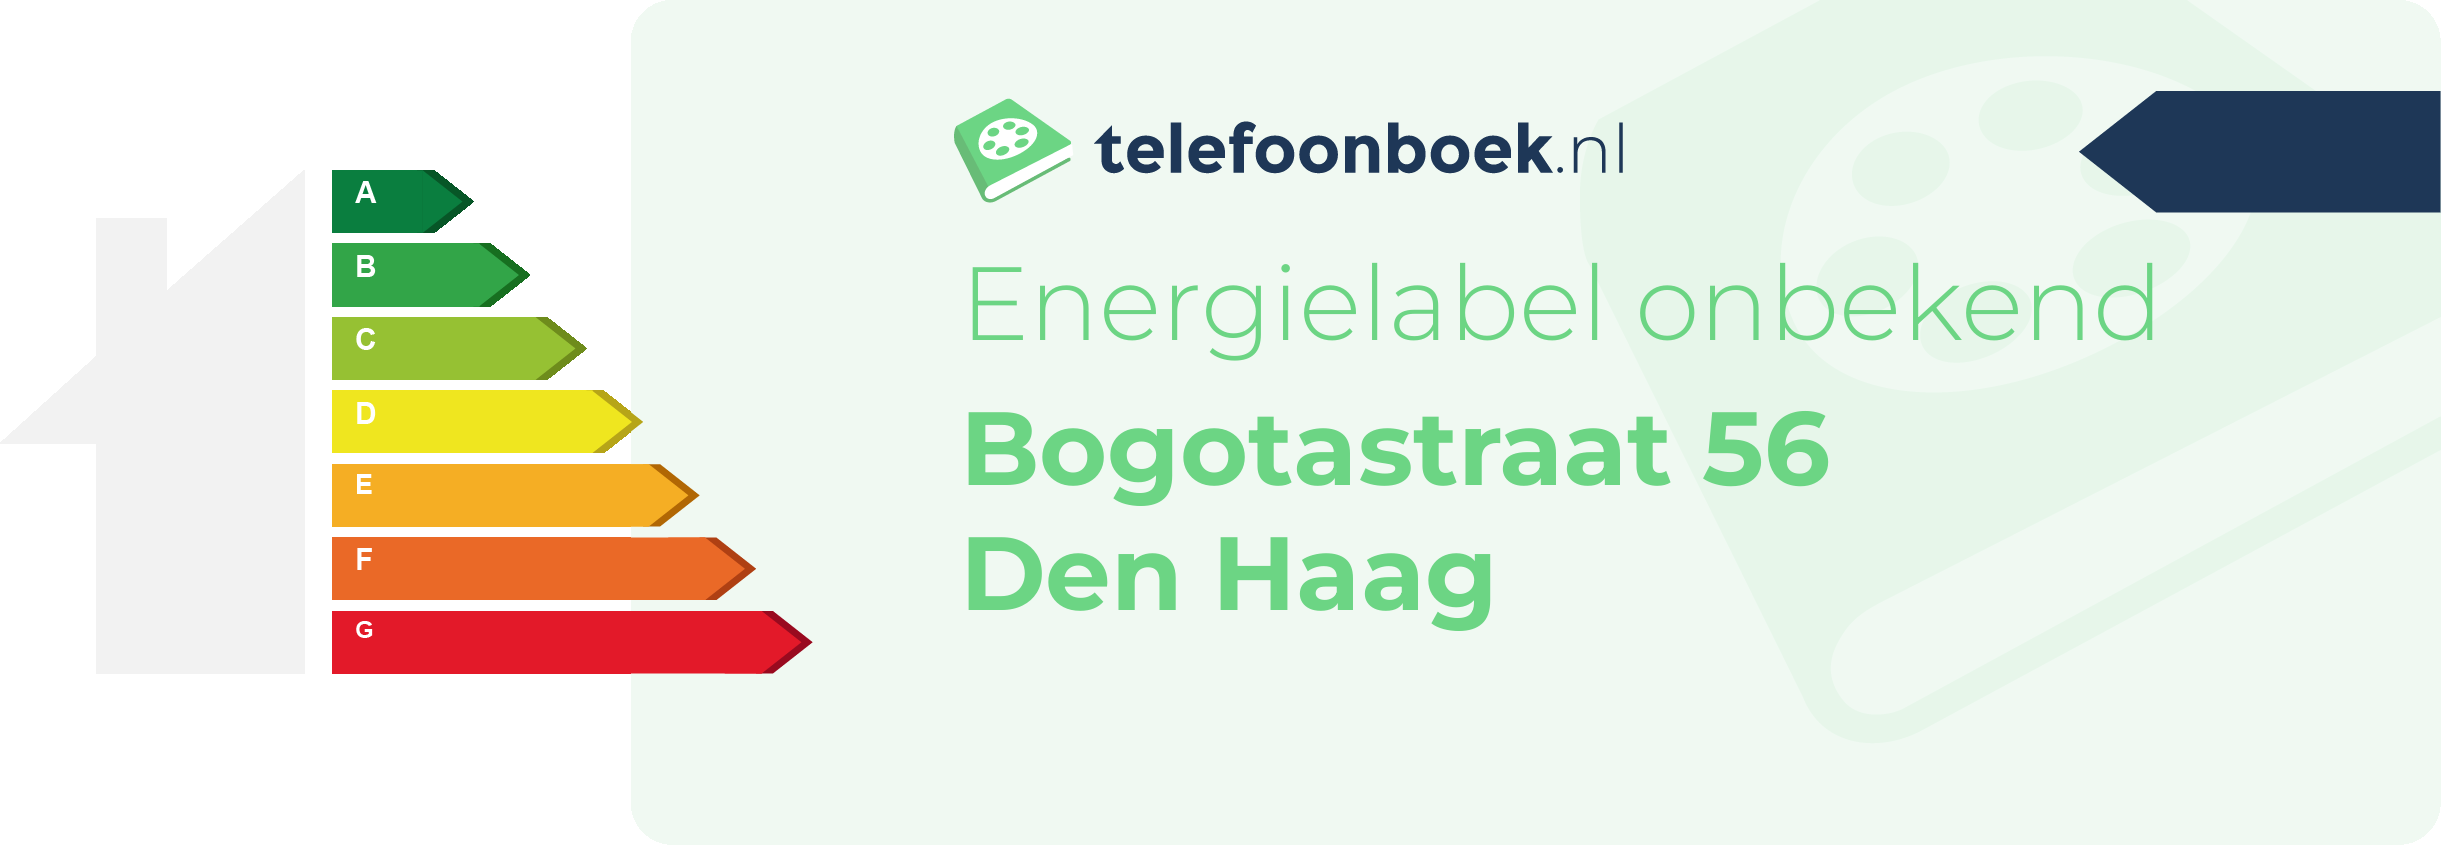 Energielabel Bogotastraat 56 Den Haag